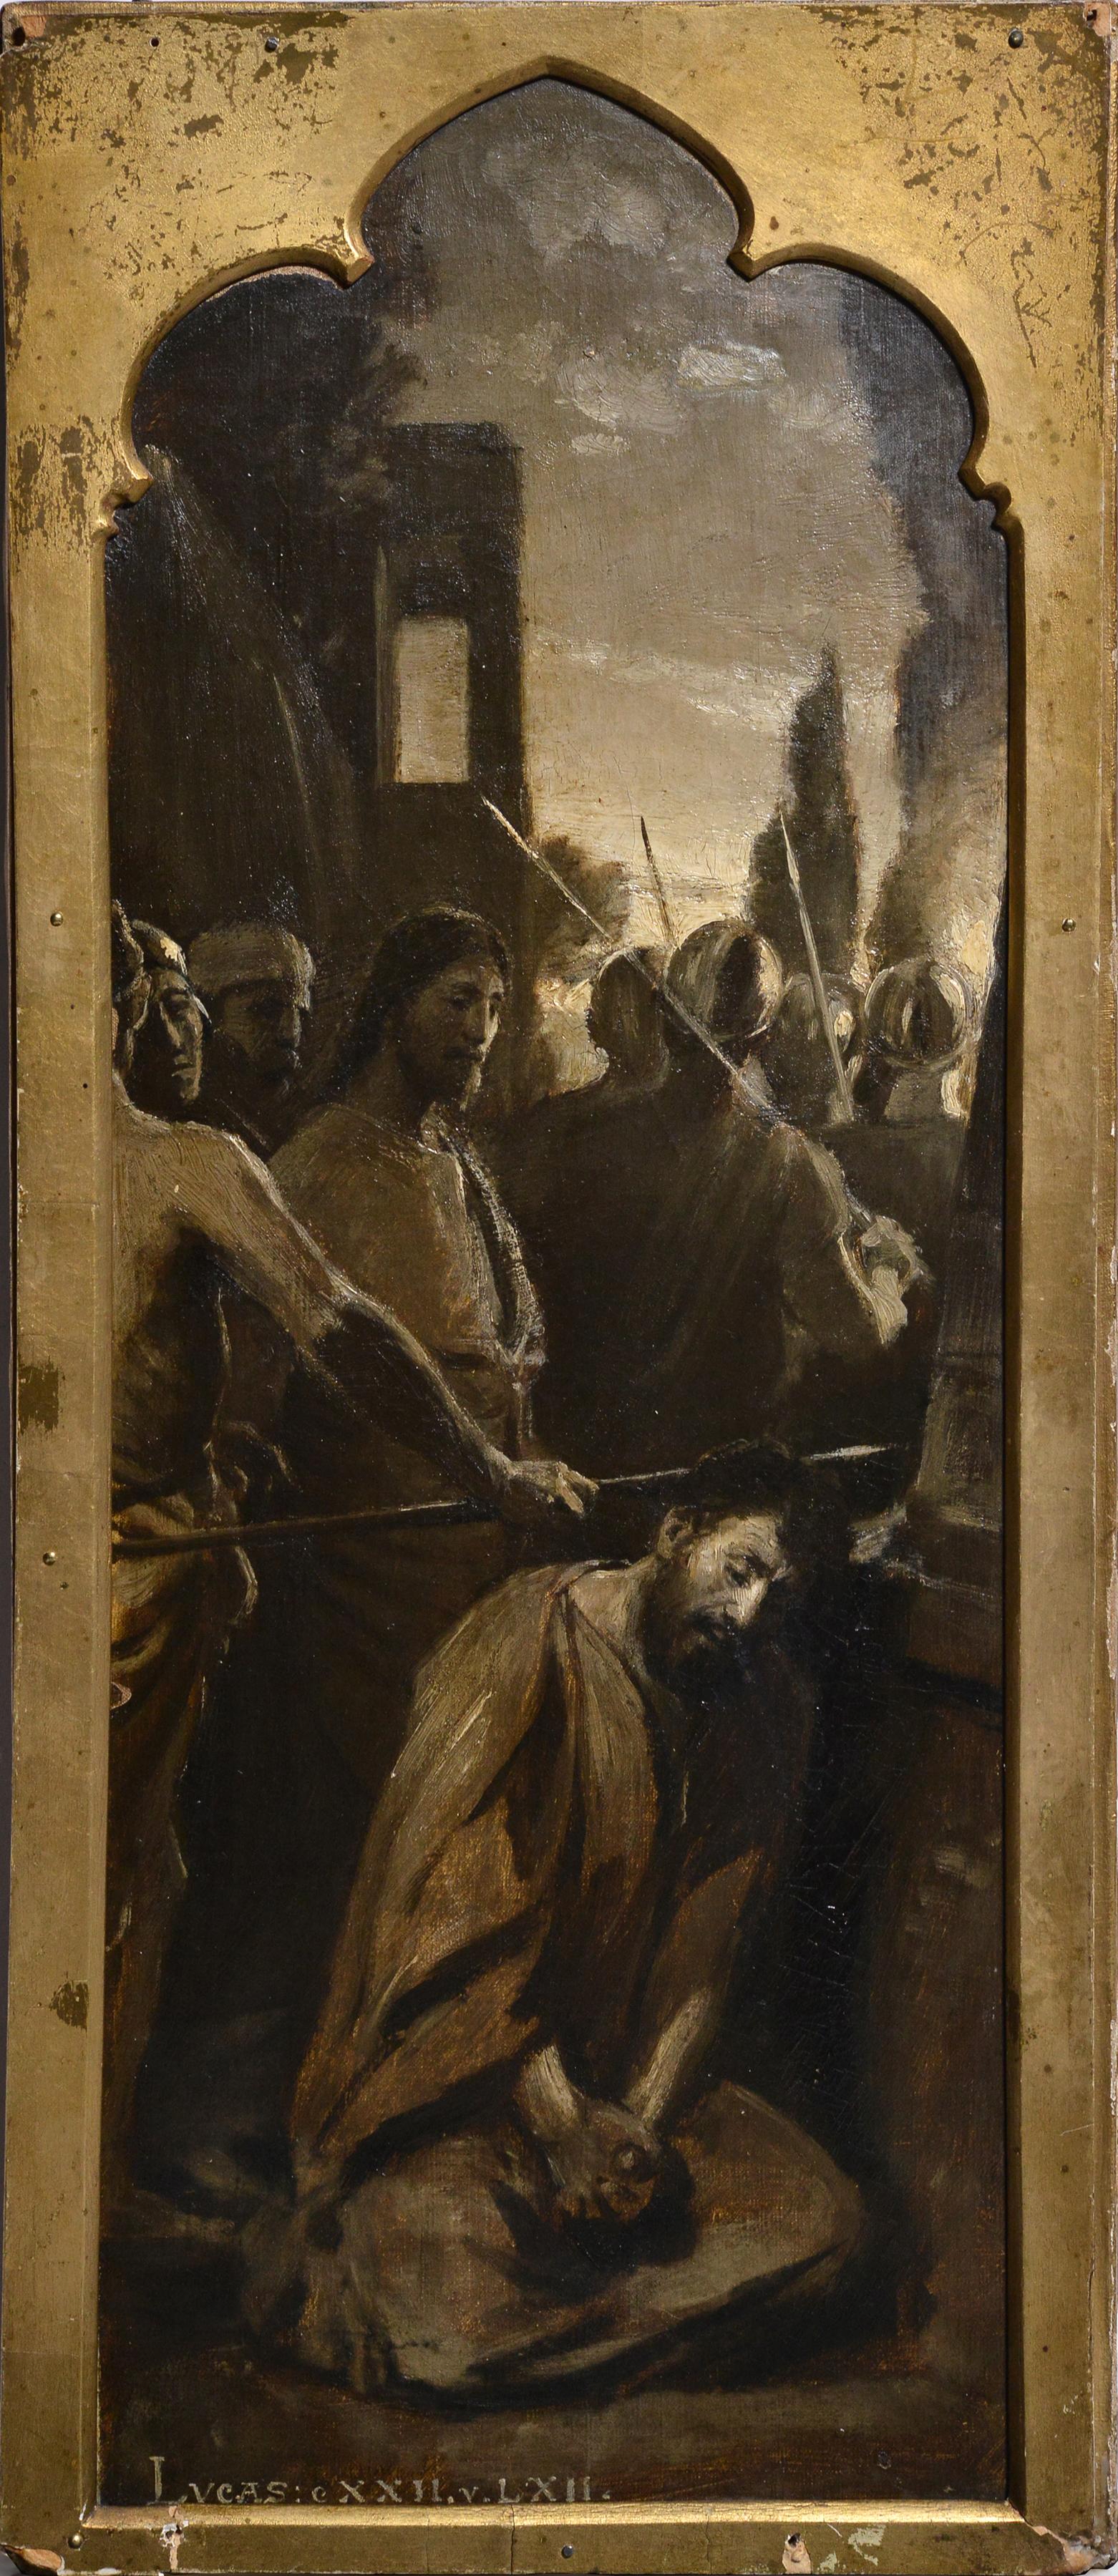 Ölgemälde auf Leinwand, Evangelische Szene am Sonnenaufgang, Jesus fing Peter zu, 19. Jahrhundert